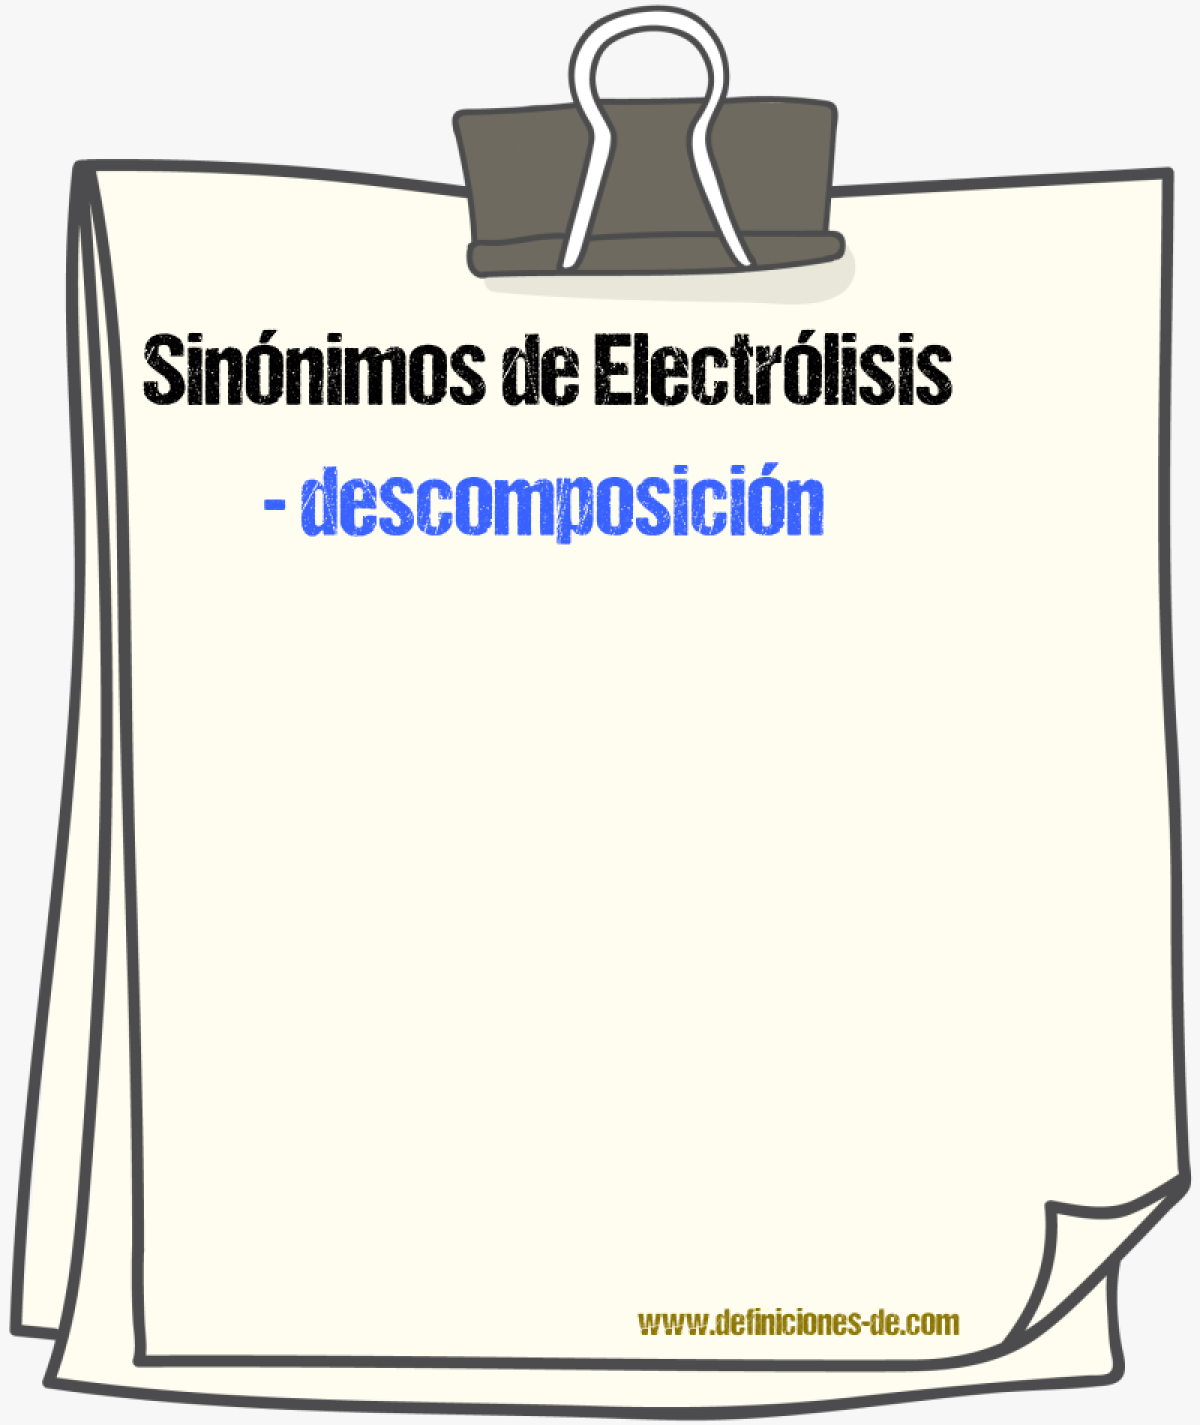 Sinónimos de electrólisis